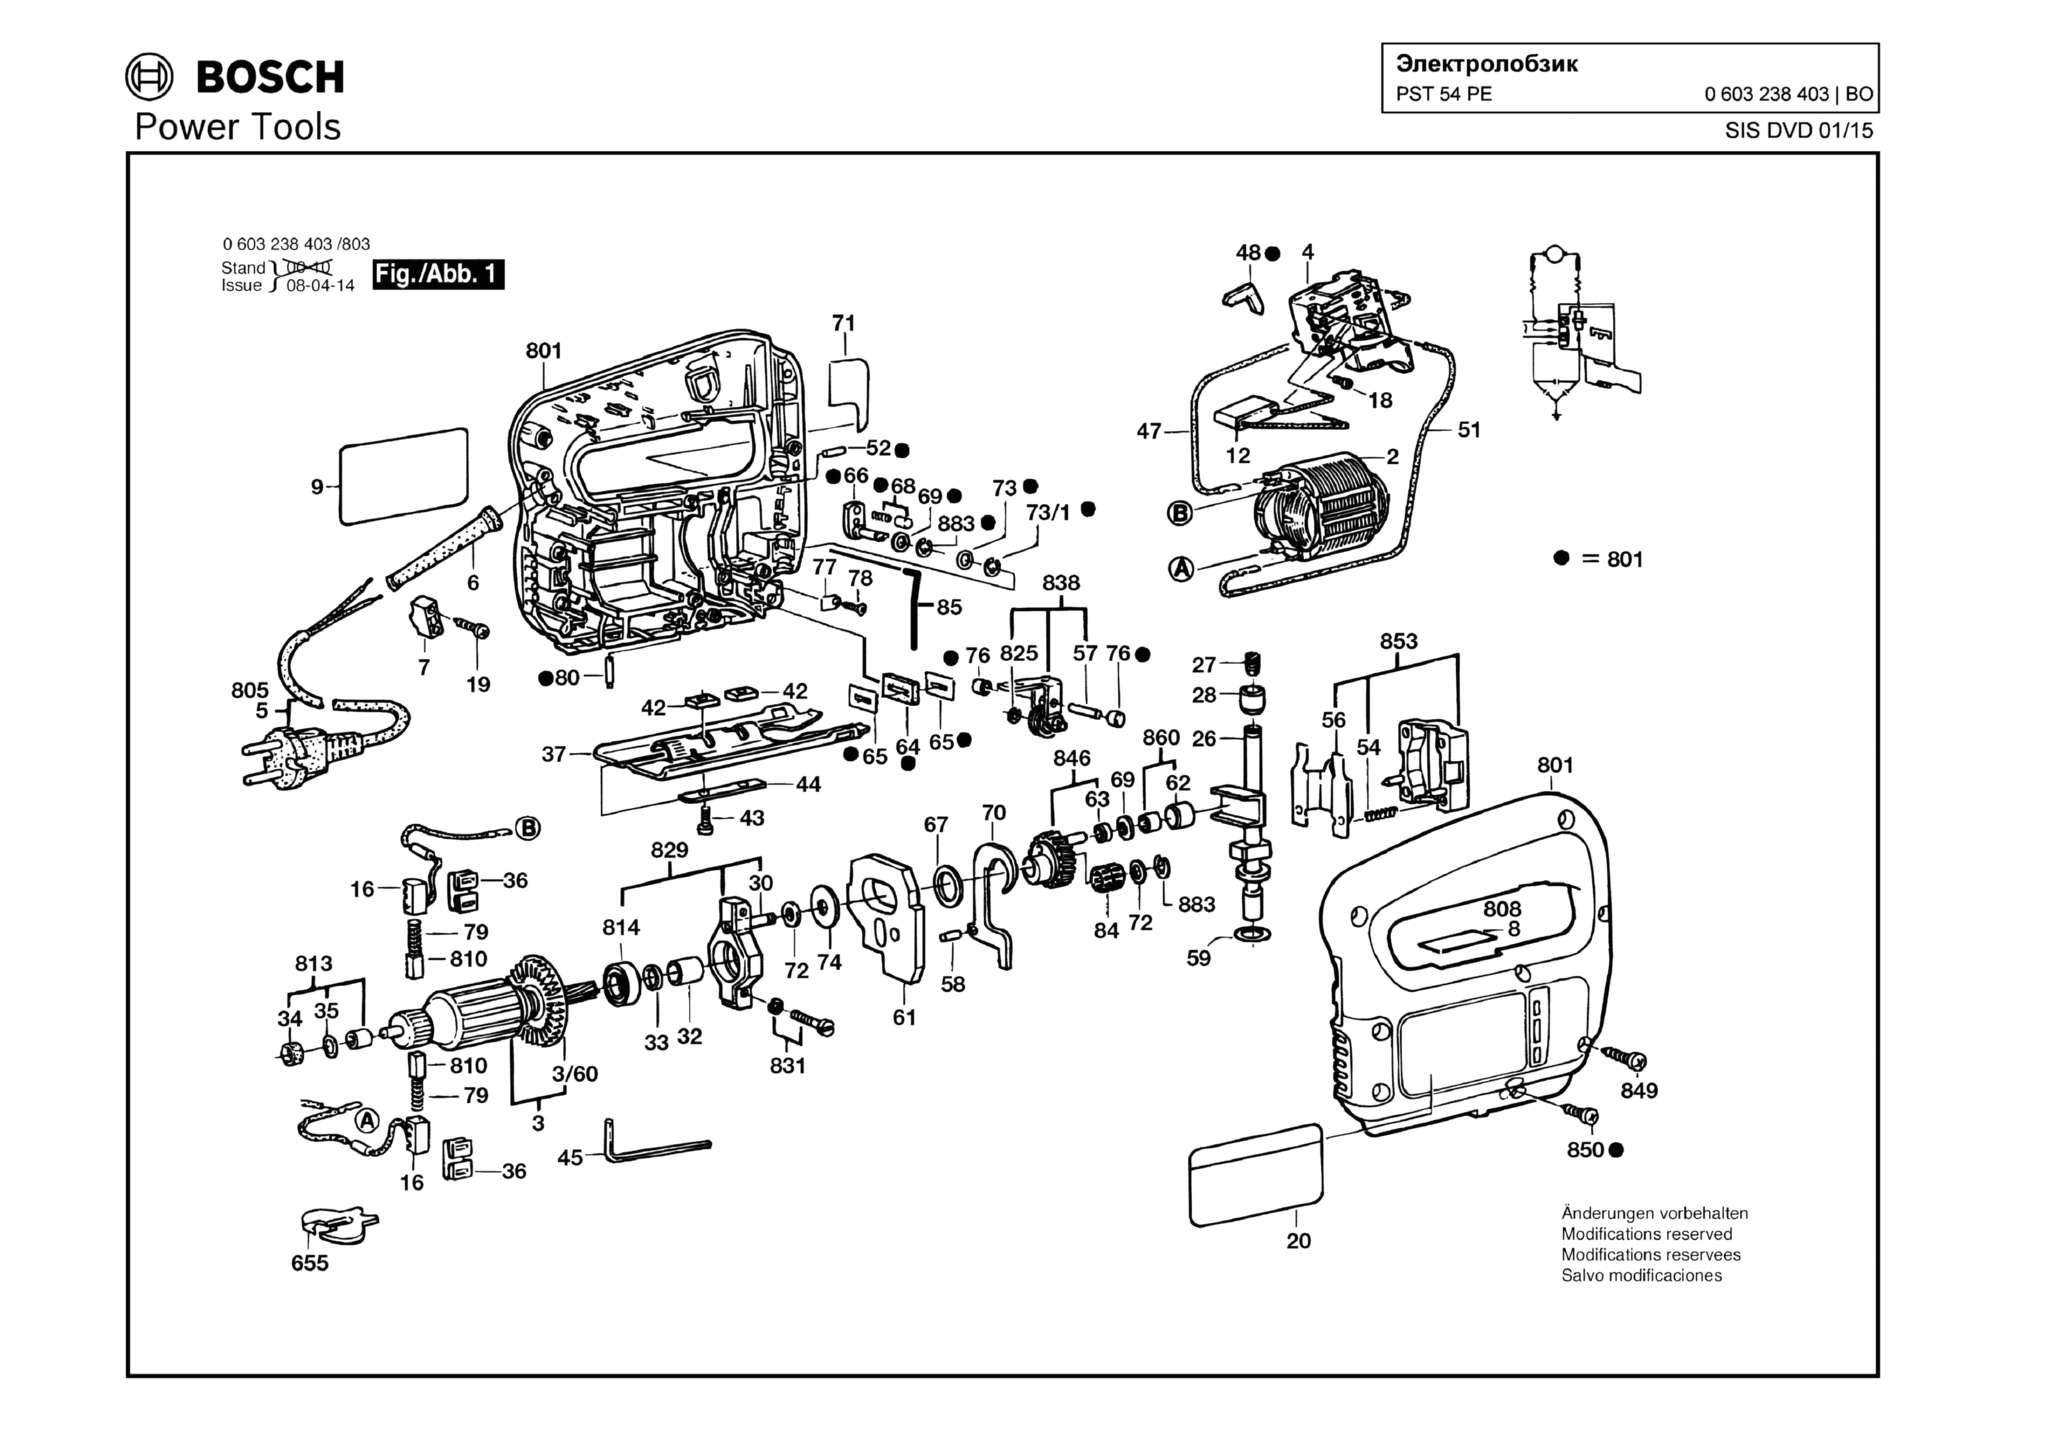 Запчасти, схема и деталировка Bosch PST 54 PE (ТИП 603238403)